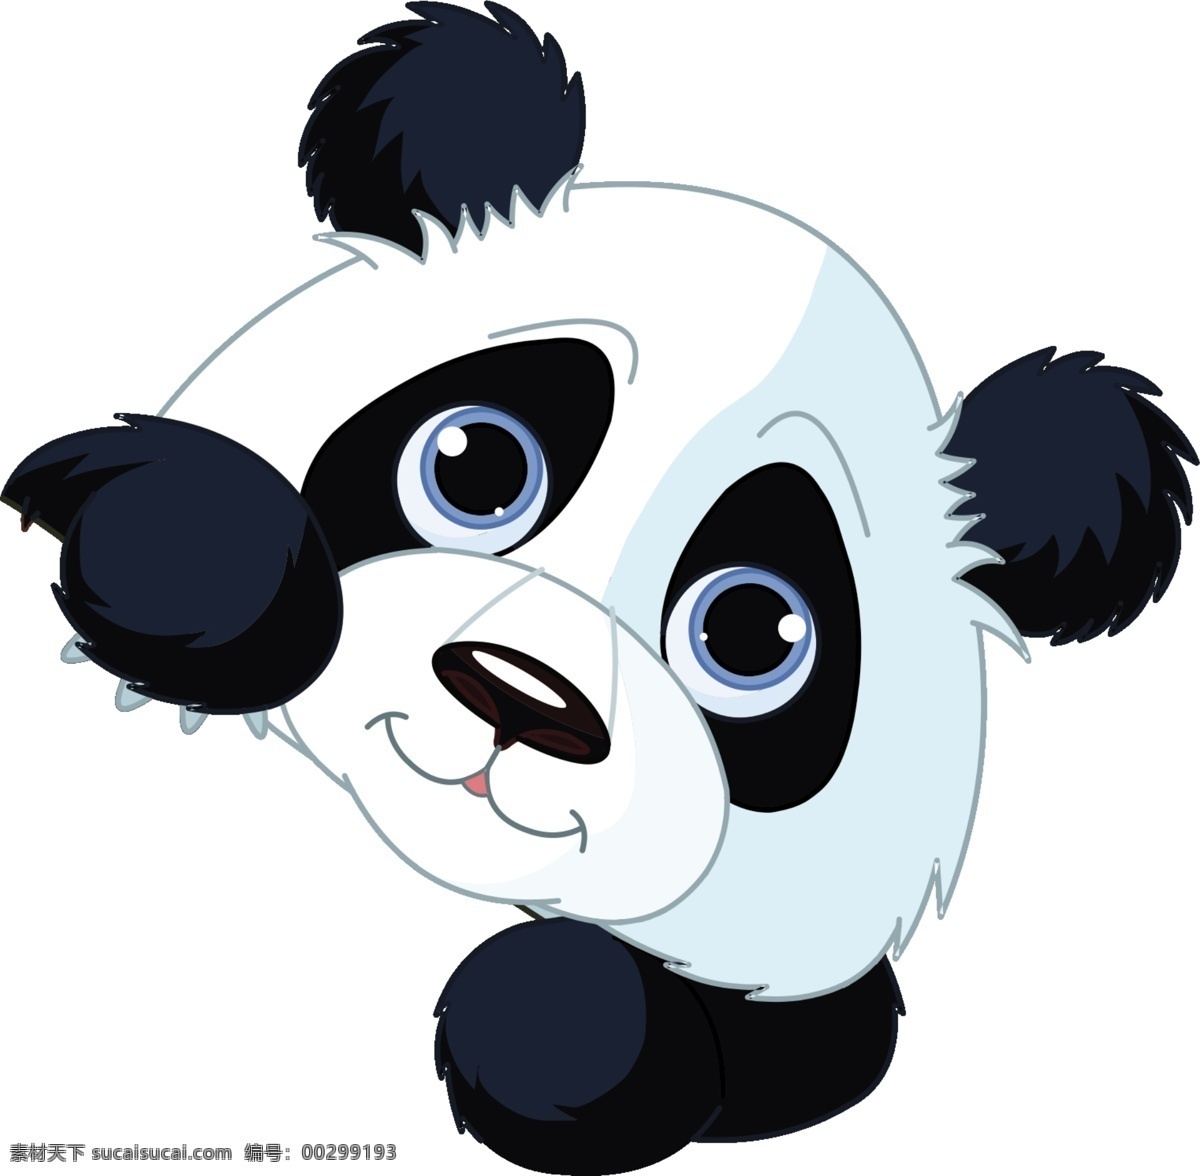 卡通熊猫素材 卡通素材 熊猫素材 熊猫下载 熊猫素材下载 分层 人物